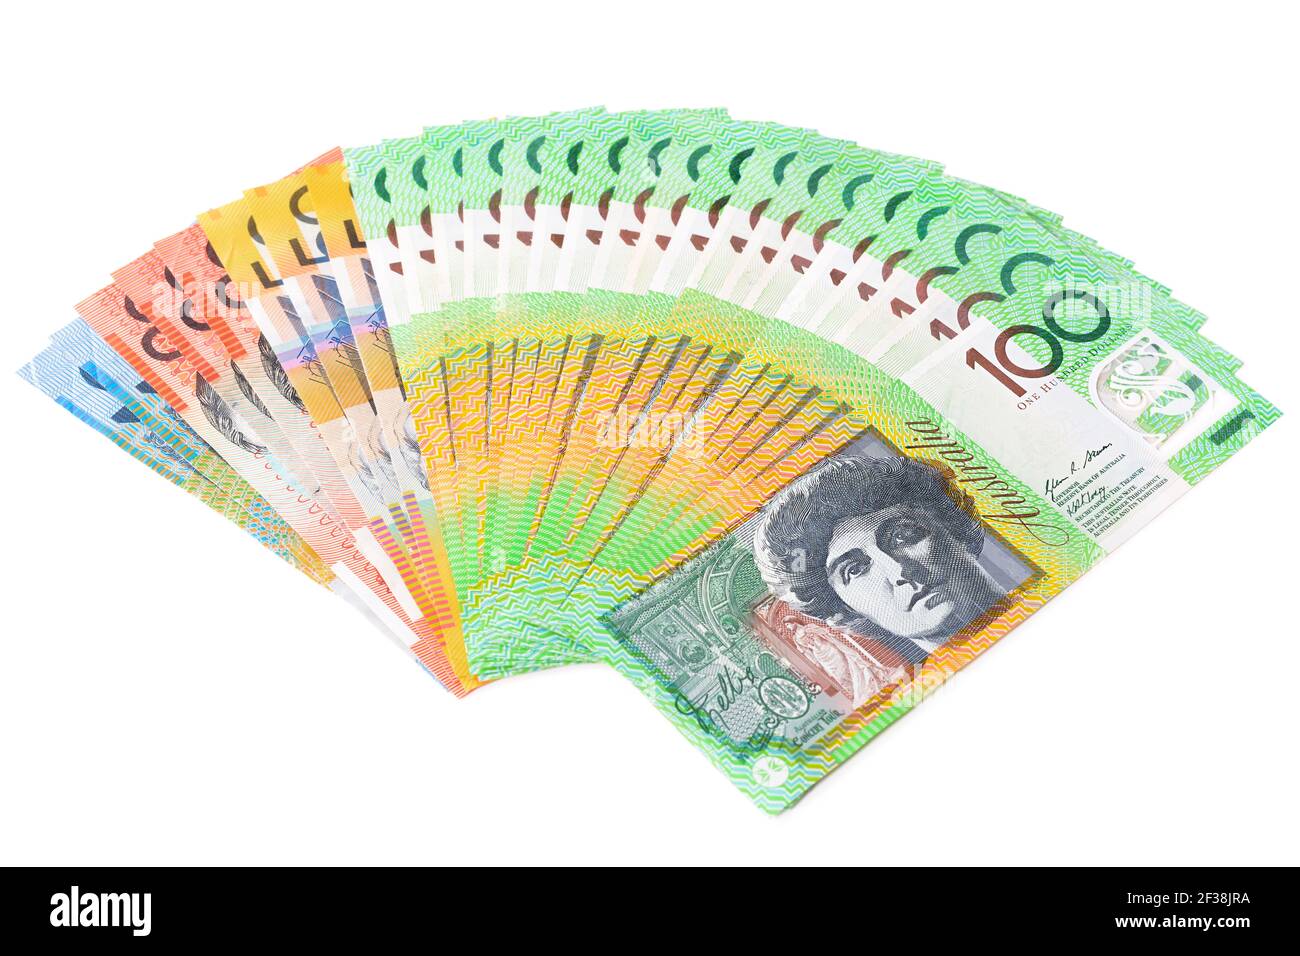 Il denaro, le banconote in dollari australiani (AUD), sparse su sfondo bianco Foto Stock